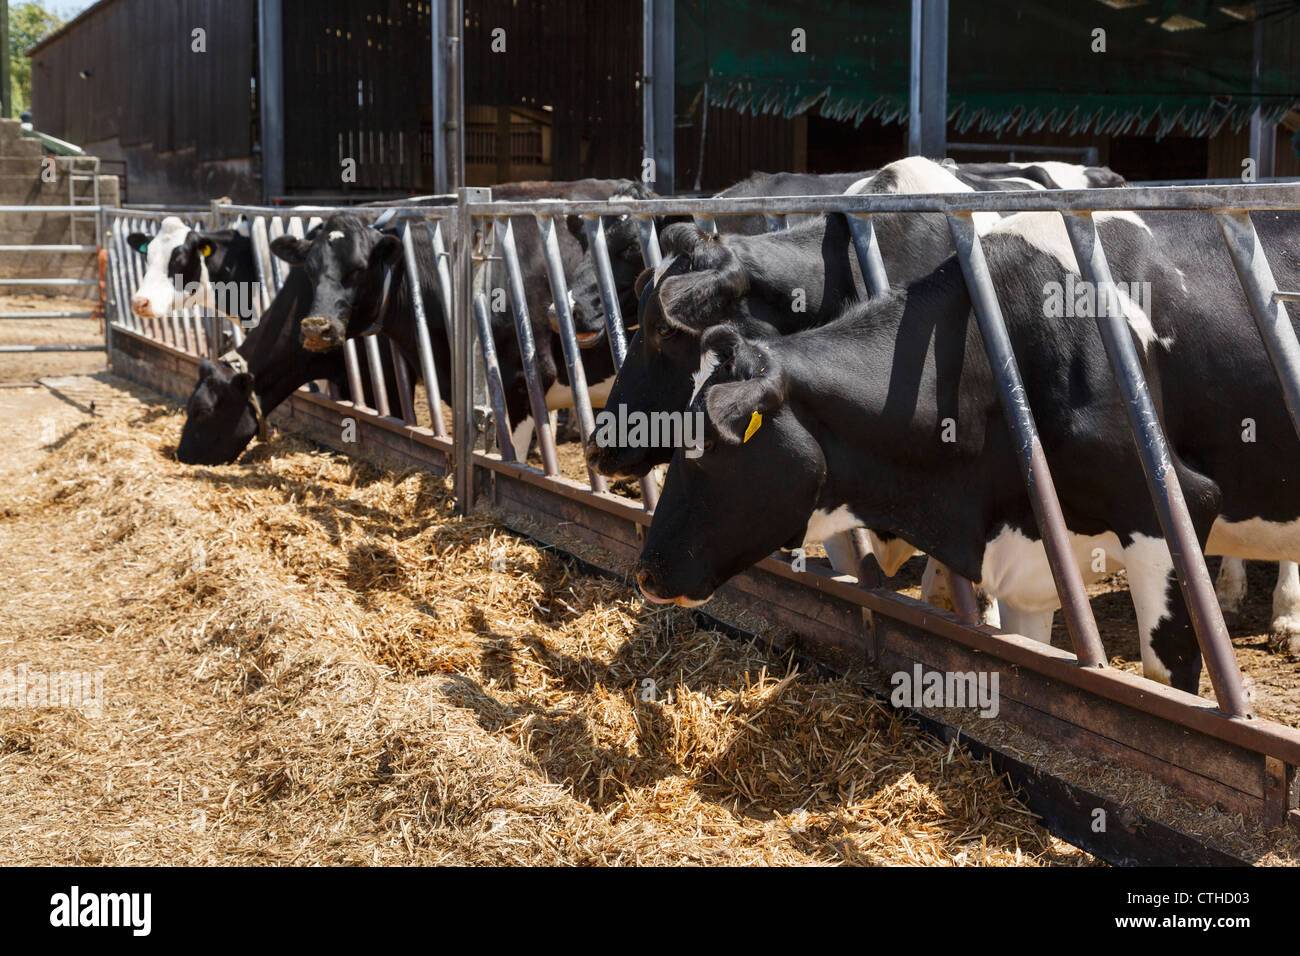 Scena agricola di mandria di mucche da latte friesiane bianche e nere che si nutrono di fieno attraverso bar in un vigliacchino in un cortile agricolo in Dorset Inghilterra Regno Unito Gran Bretagna Foto Stock